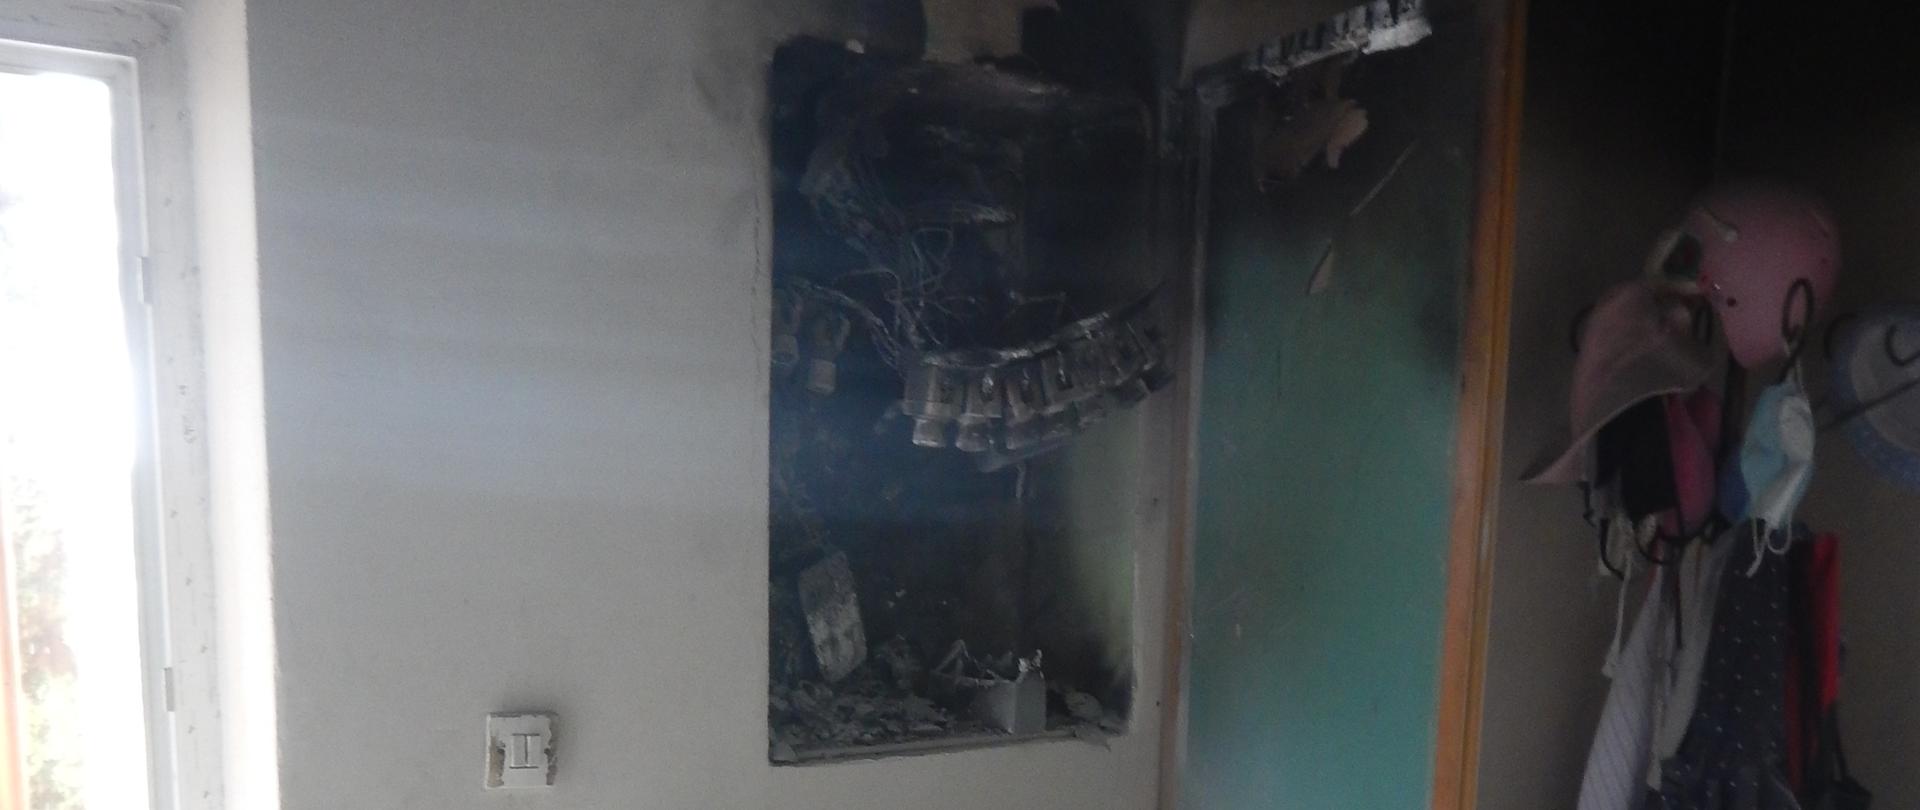 Zdjęcie przedstawia spaloną rozdzielnię elektryczną. W otoczeniu rozdzielni znajduje się gaśnica